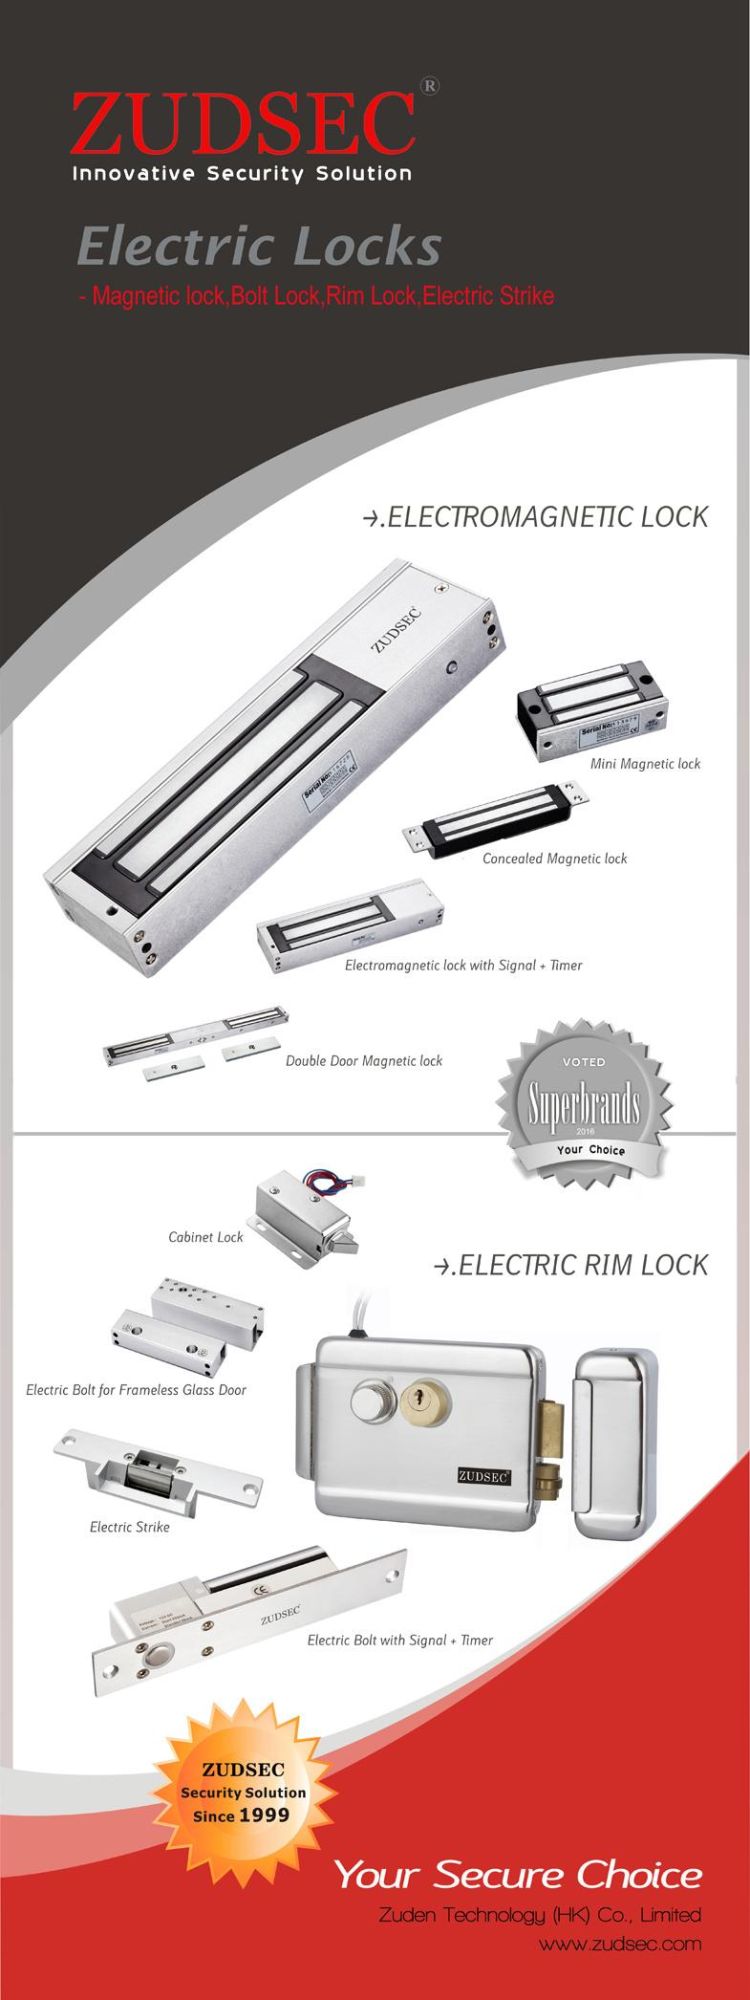 Stainless Steel Dead Lock, Electric Bolt Lock Bracket for Frameless Glass Door